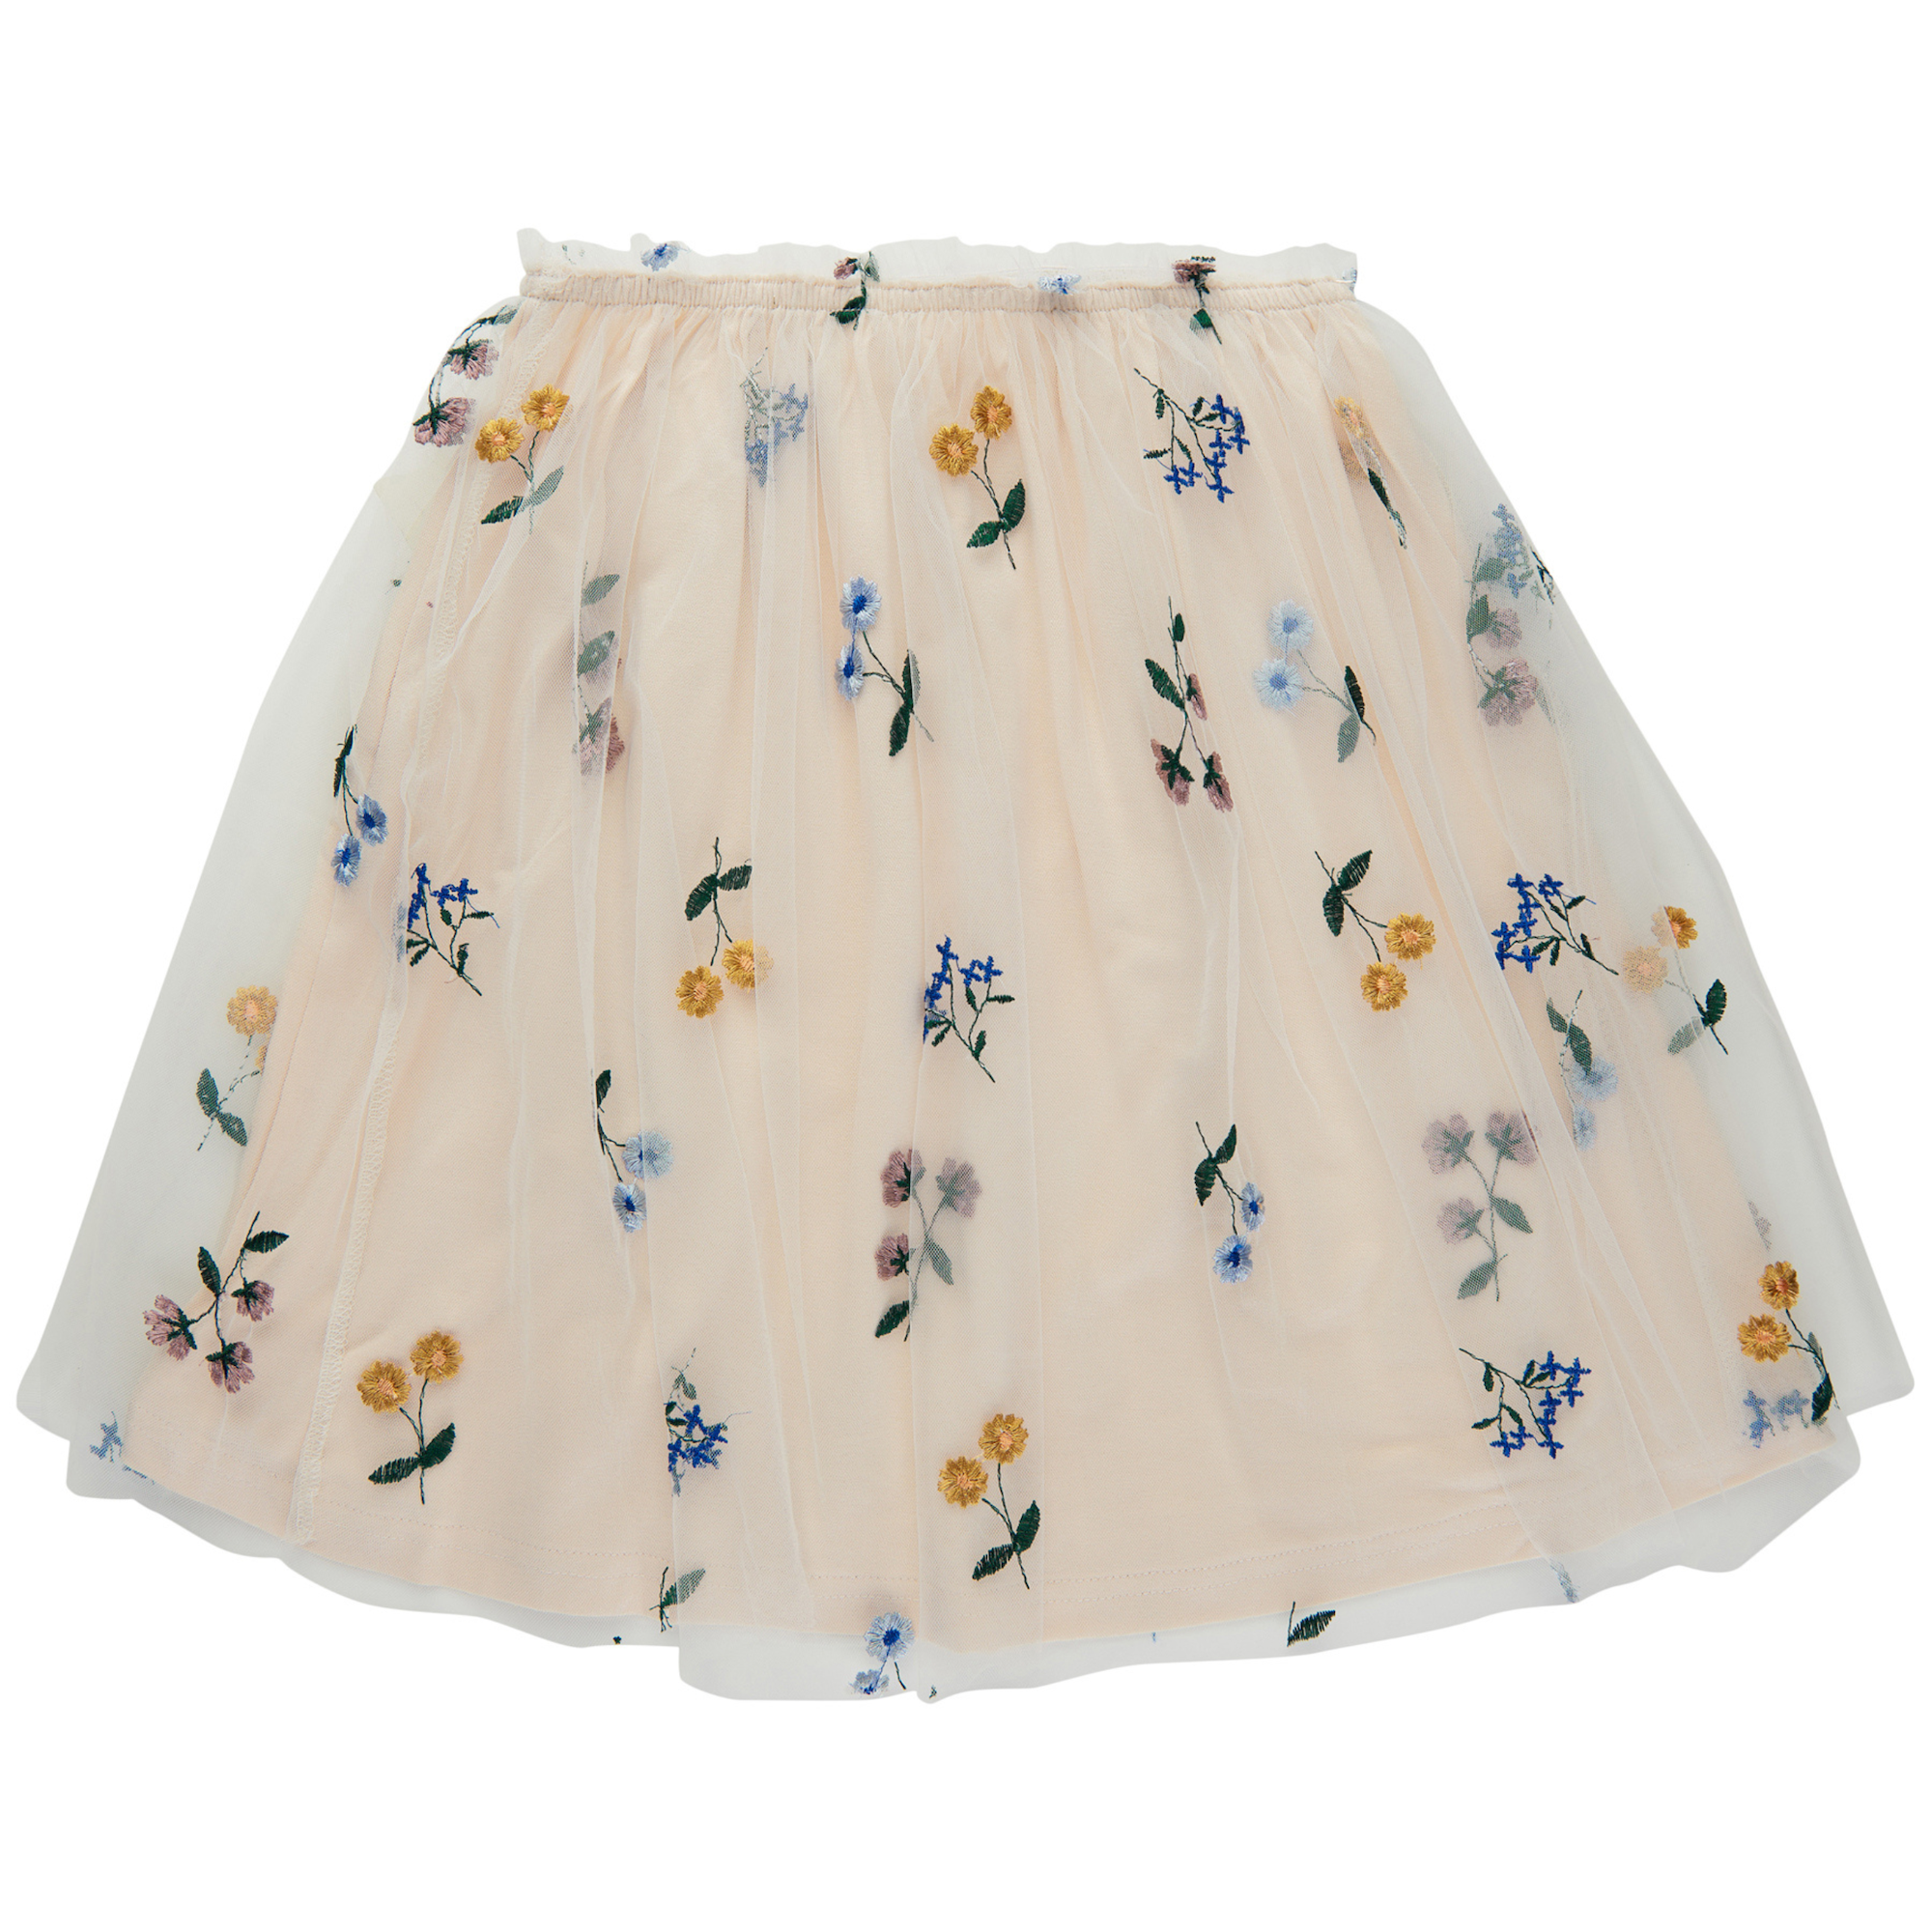 THE NEW - Fabianna Skirt (TN4811) - White Swan